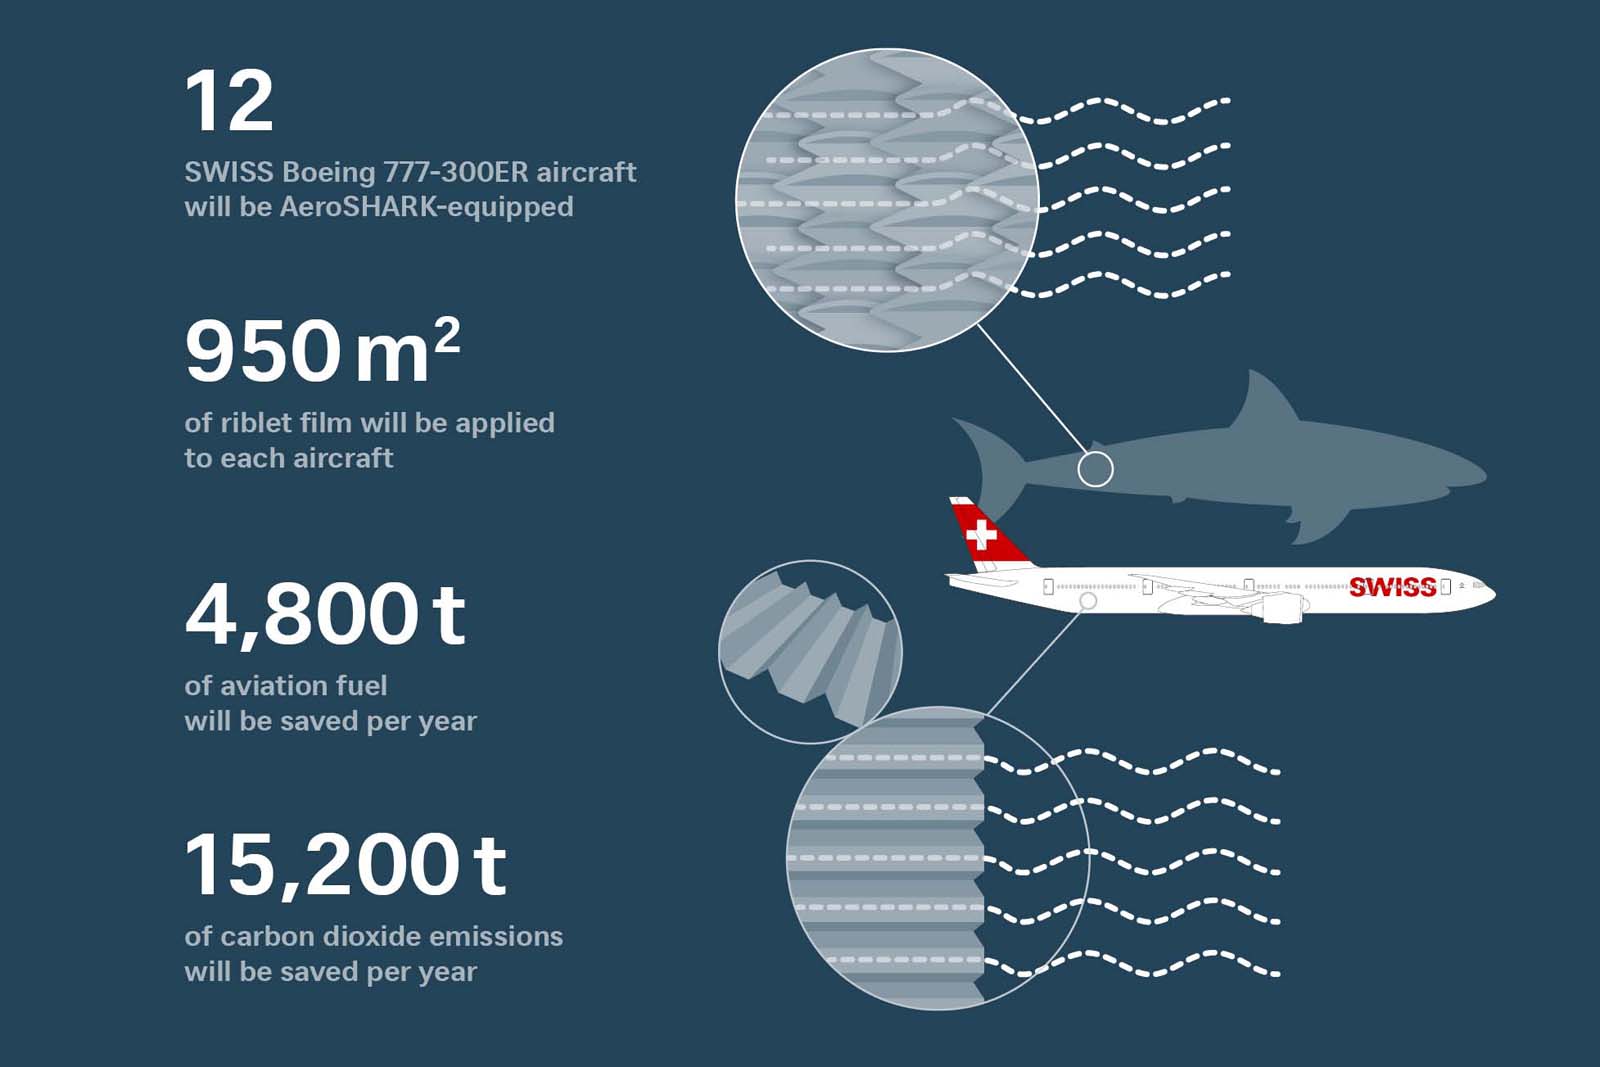 航空機の燃費やCO2排出を改善する「サメ肌」フィルム『AeroShark』、スイス航空が旅客機初採用へ